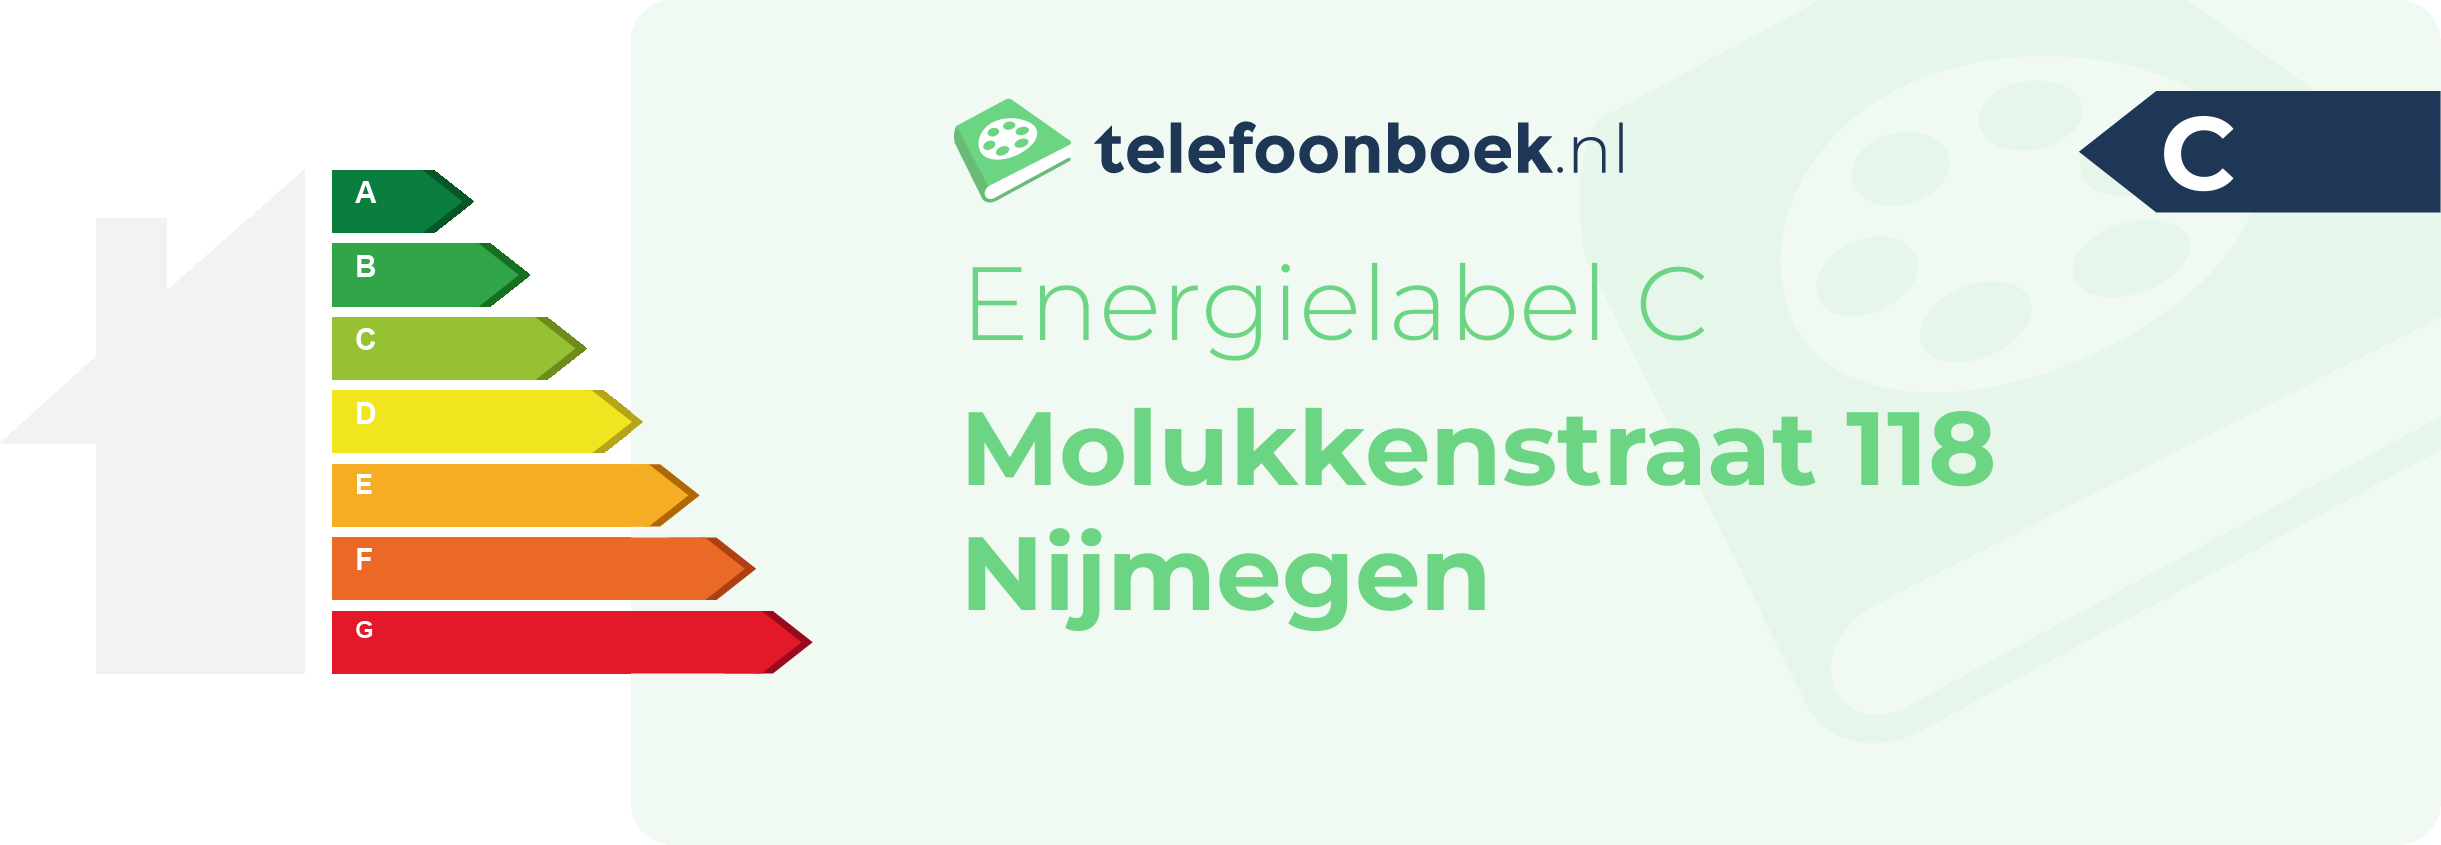 Energielabel Molukkenstraat 118 Nijmegen